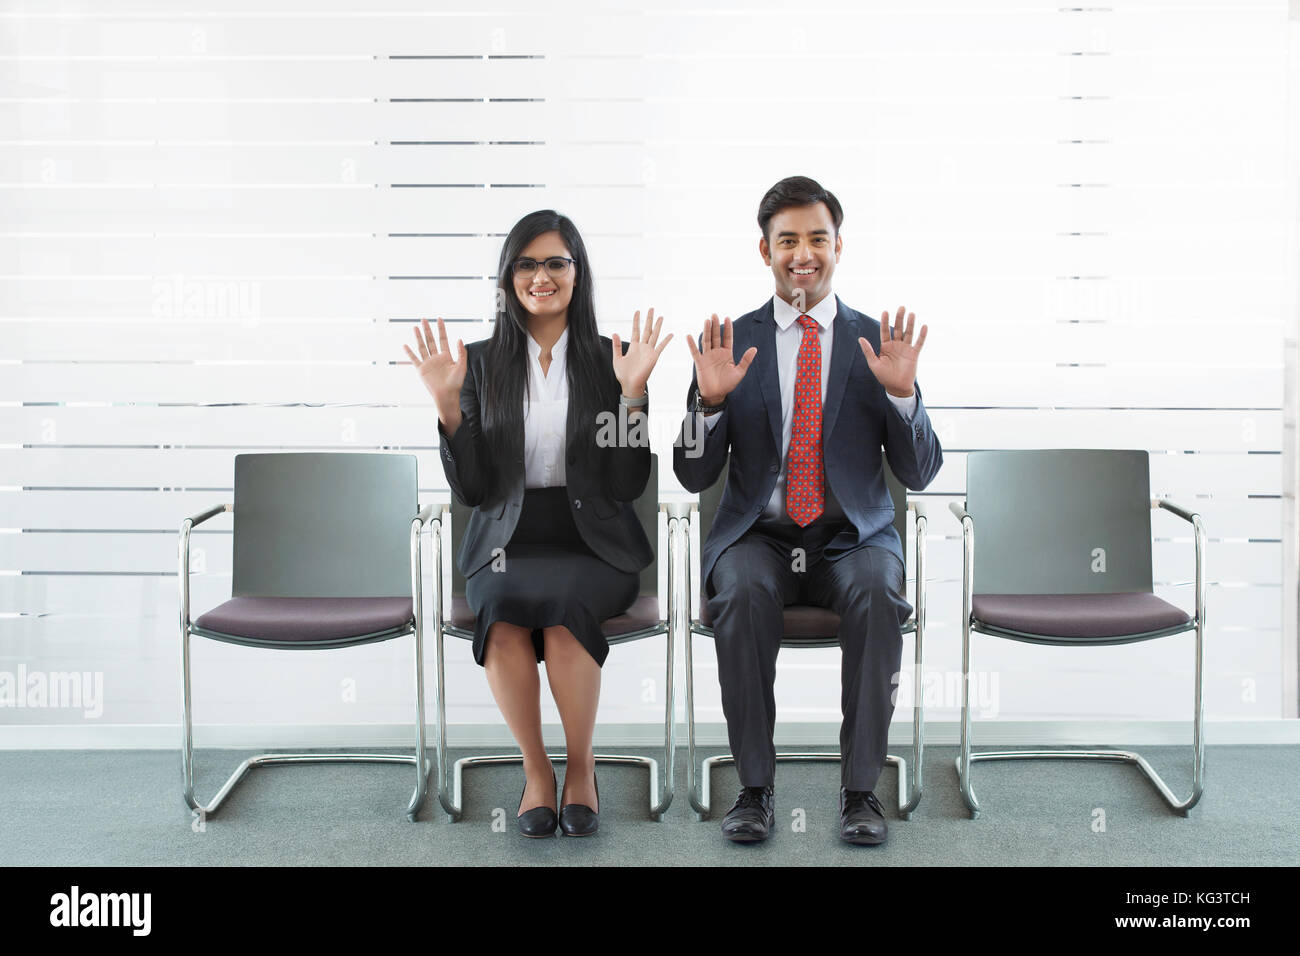 Retrato del empresario sonriente y empresaria mostrando las manos sentado en silla de oficina Foto de stock